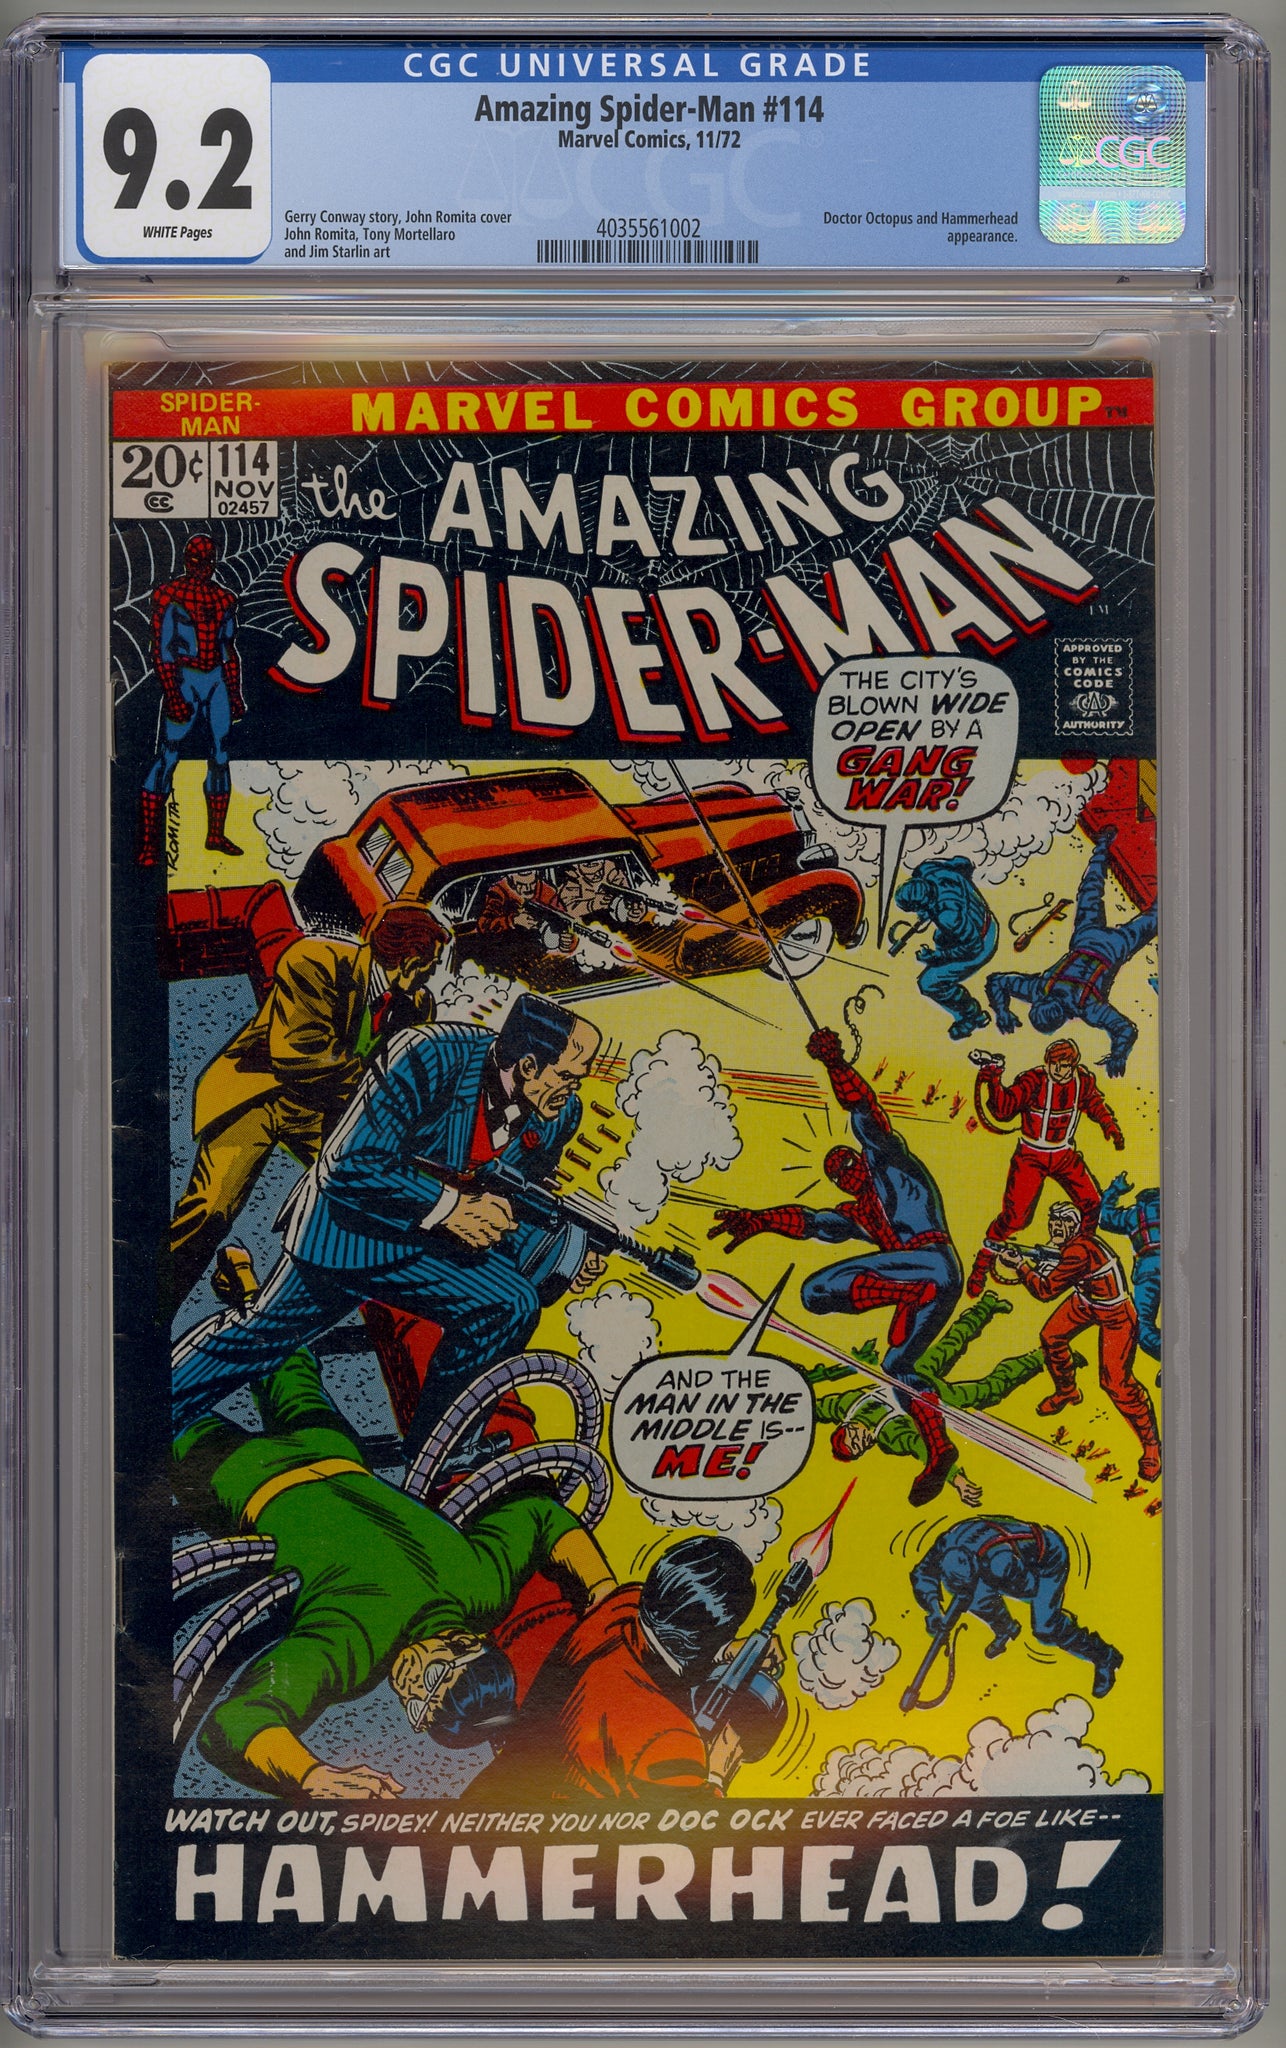 Amazing Spider-Man #114 (1972) Hammerhead